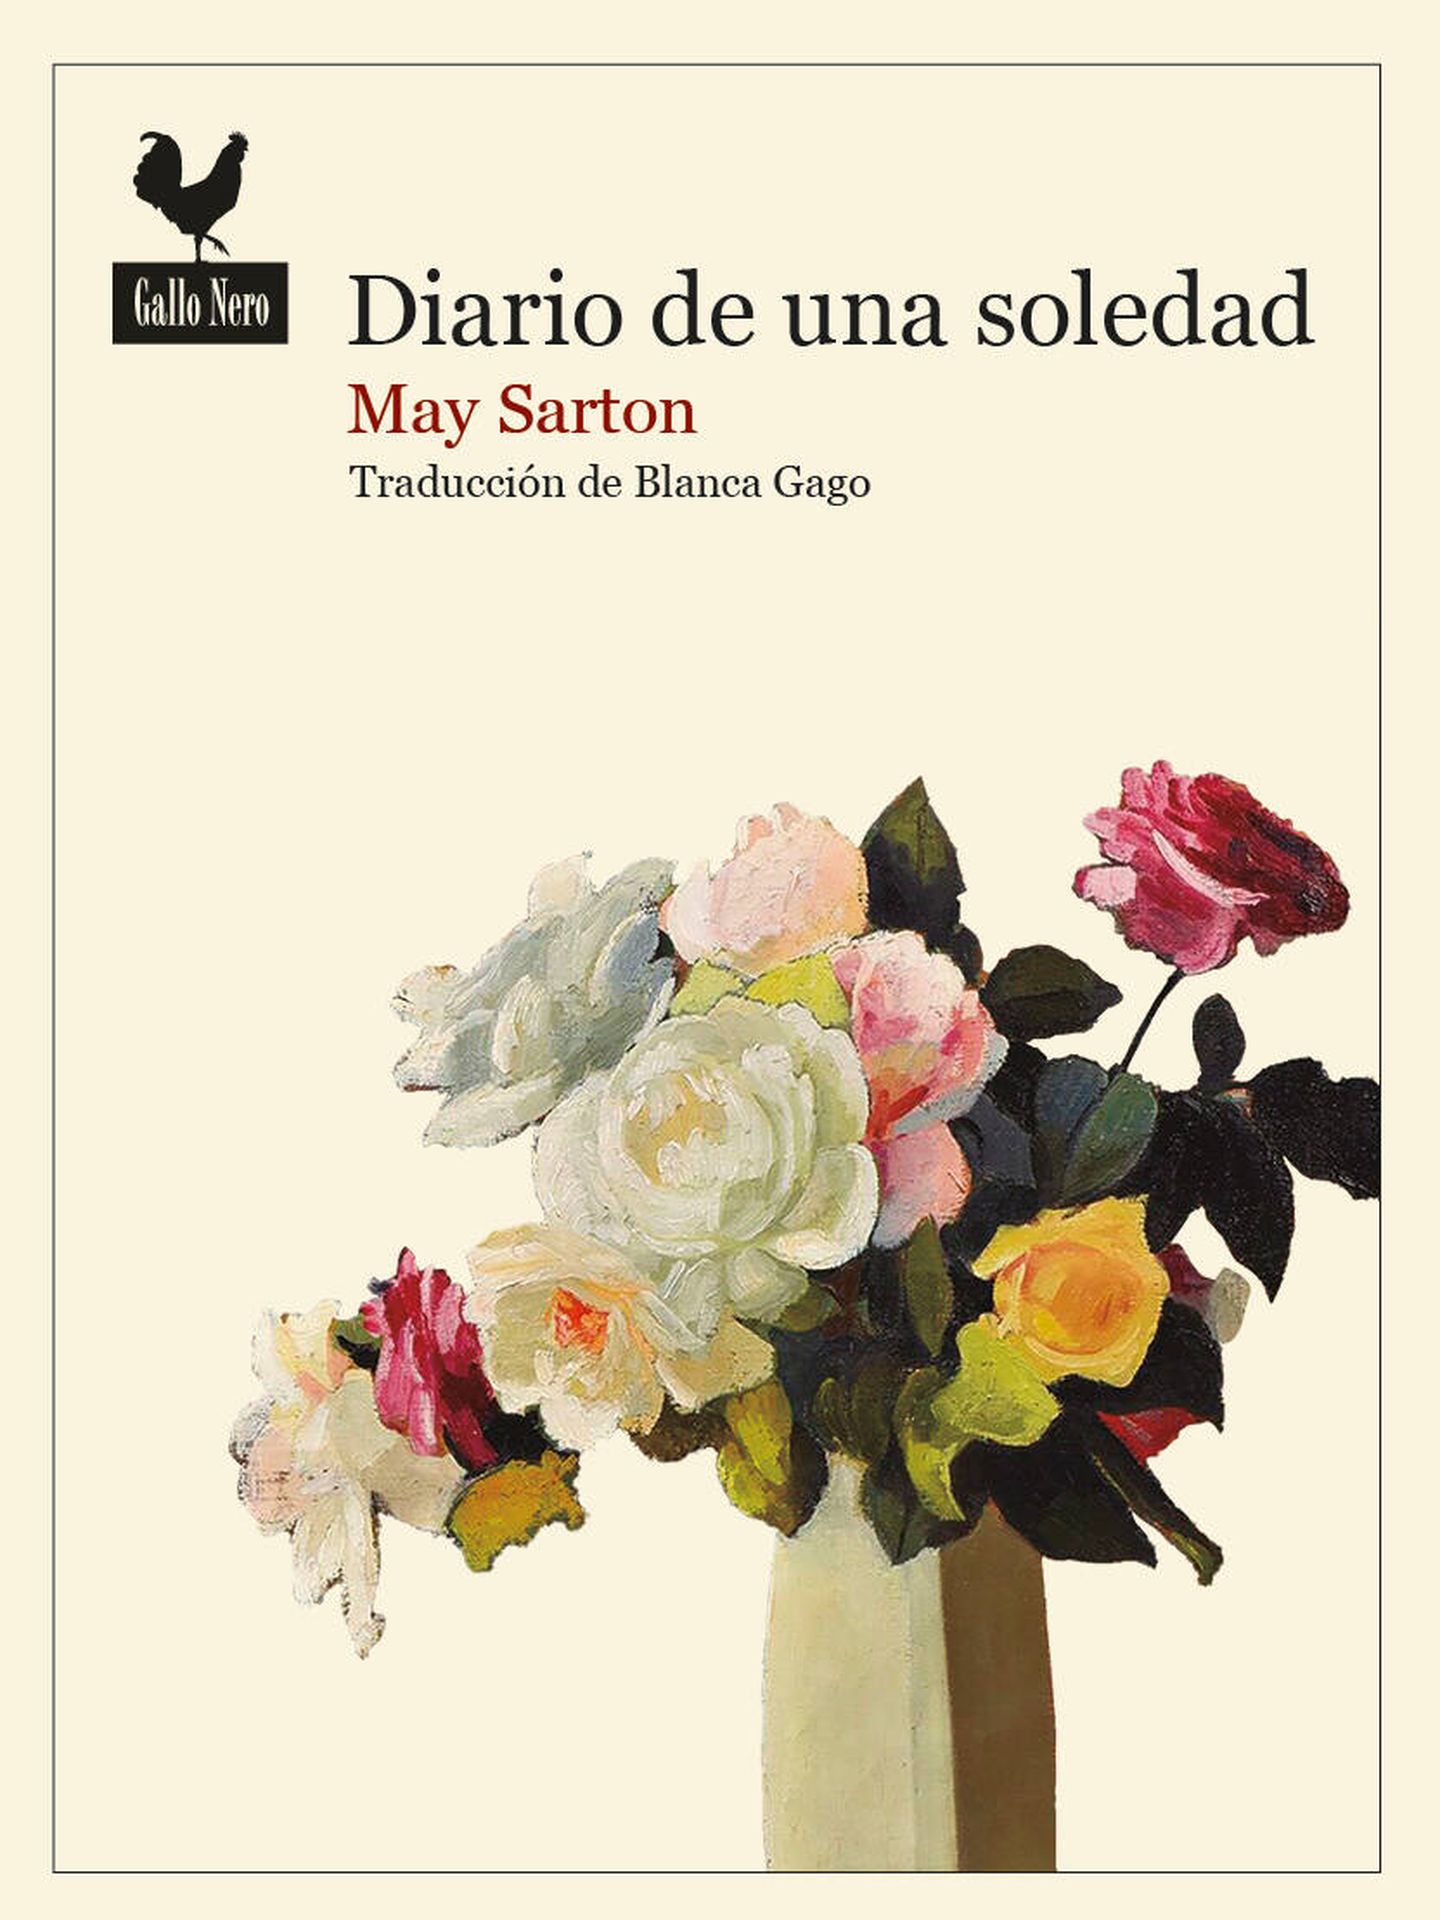 'Diario de una soledad'.